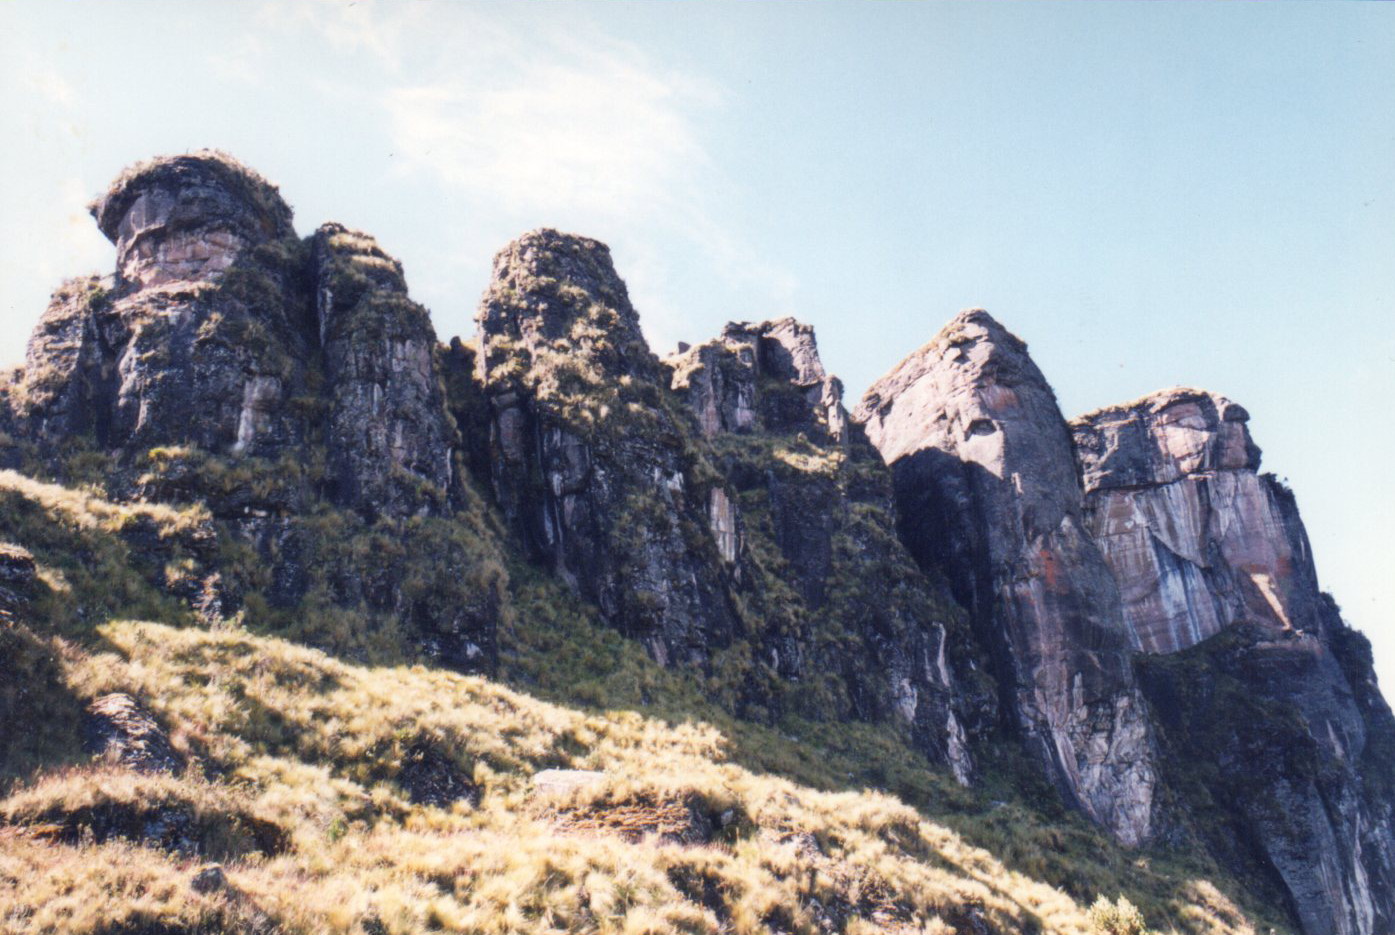 Northwest side of Shubet Rock